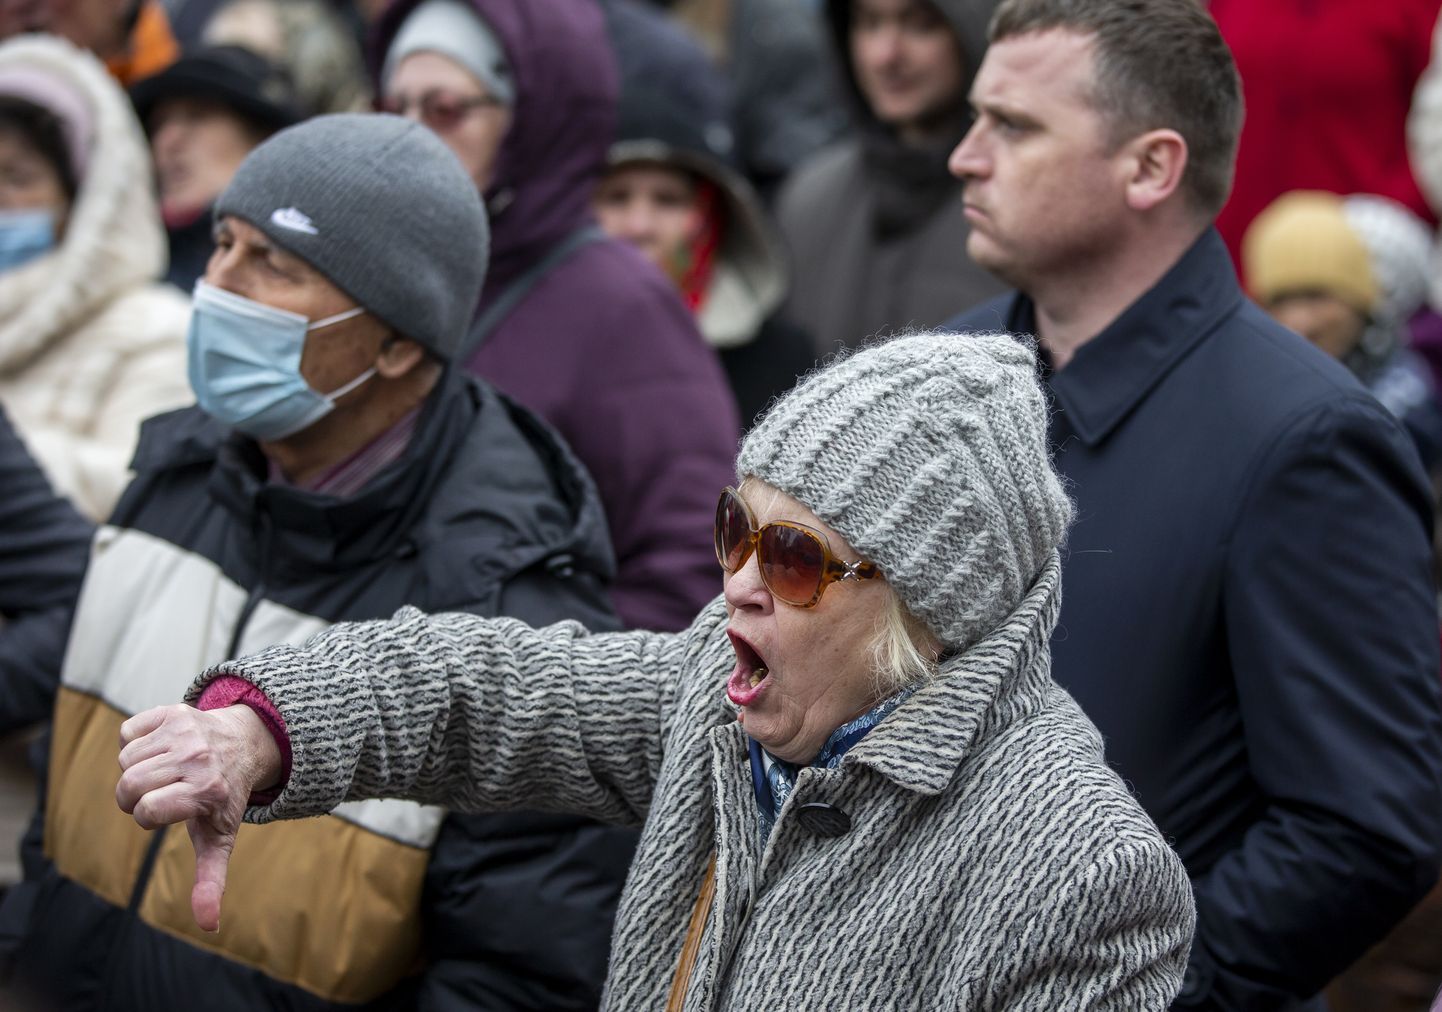 Moldovas puhkesid märtsis valitsusvastased meeleavaldused. Moldova politsei pidas üle-eelmisel nädalal kinni Moskva-meelse võrgustiku liikmed, kelle eesmärk oli destabiliseerida meeleavaldusel olukorda,